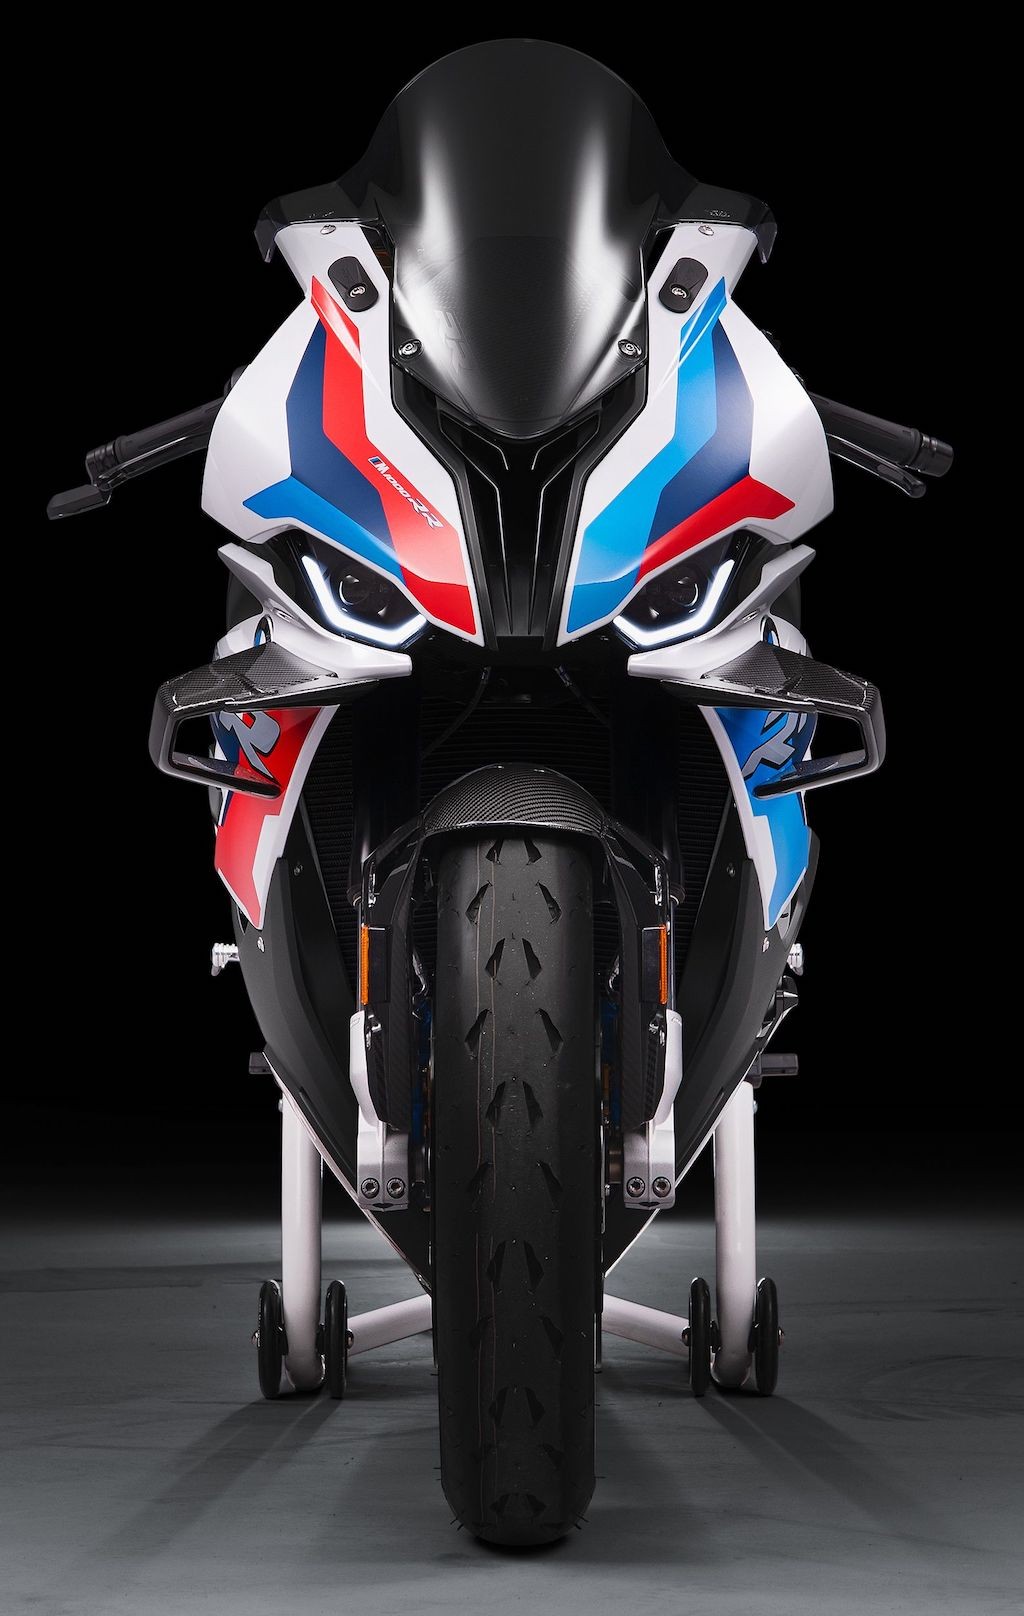 Chữ M của BMW đã lấn sân sang mảng xe máy, tạo ra siêu phẩm superbike dựa trên S 1000 RR ảnh 13